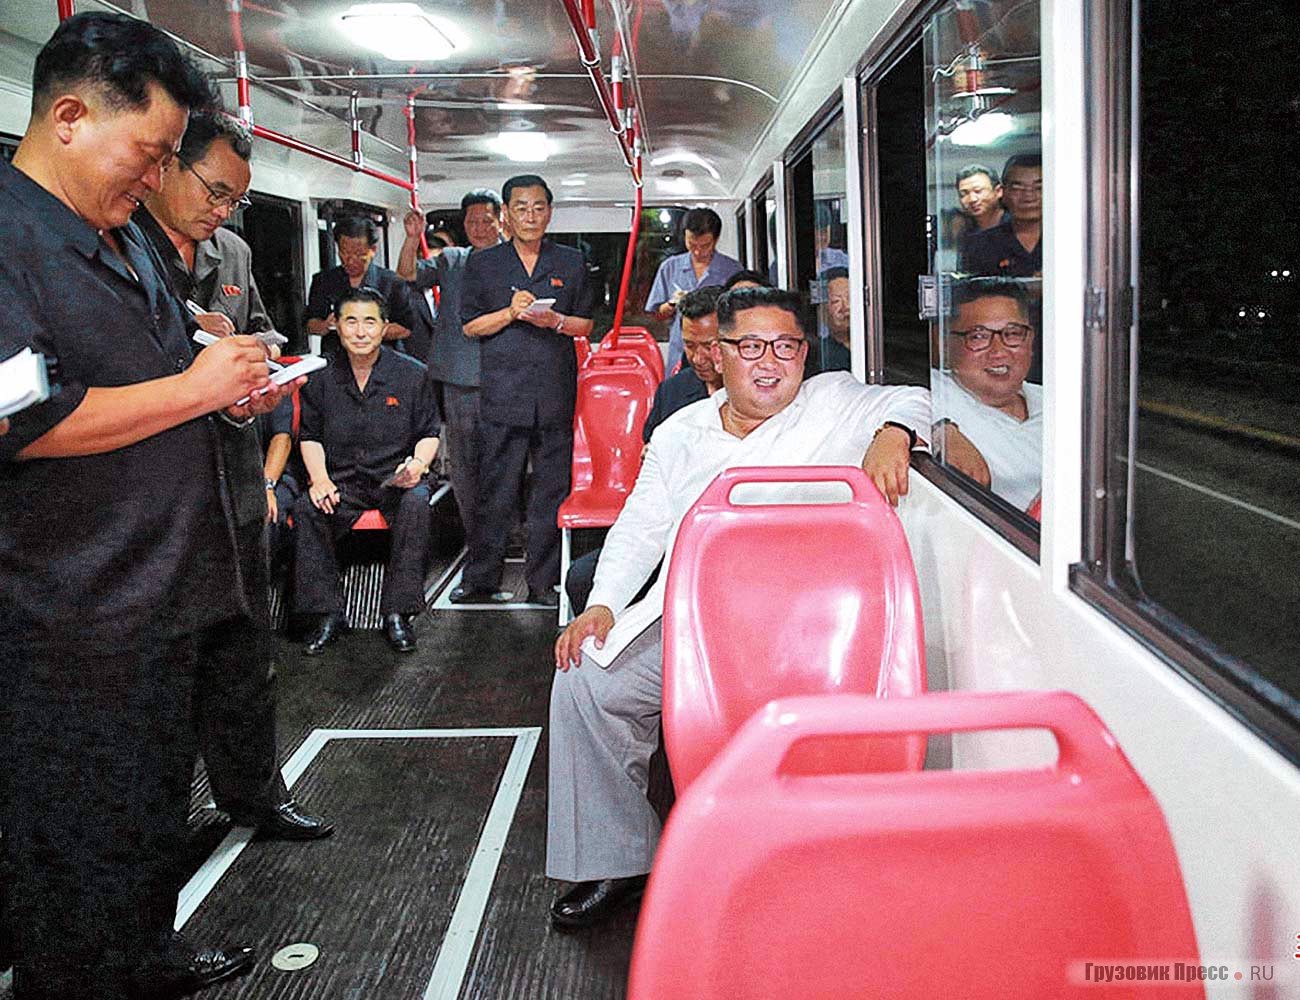 Руководитель страны остался доволен новыми пластиковыми сиденьями в троллейбусе